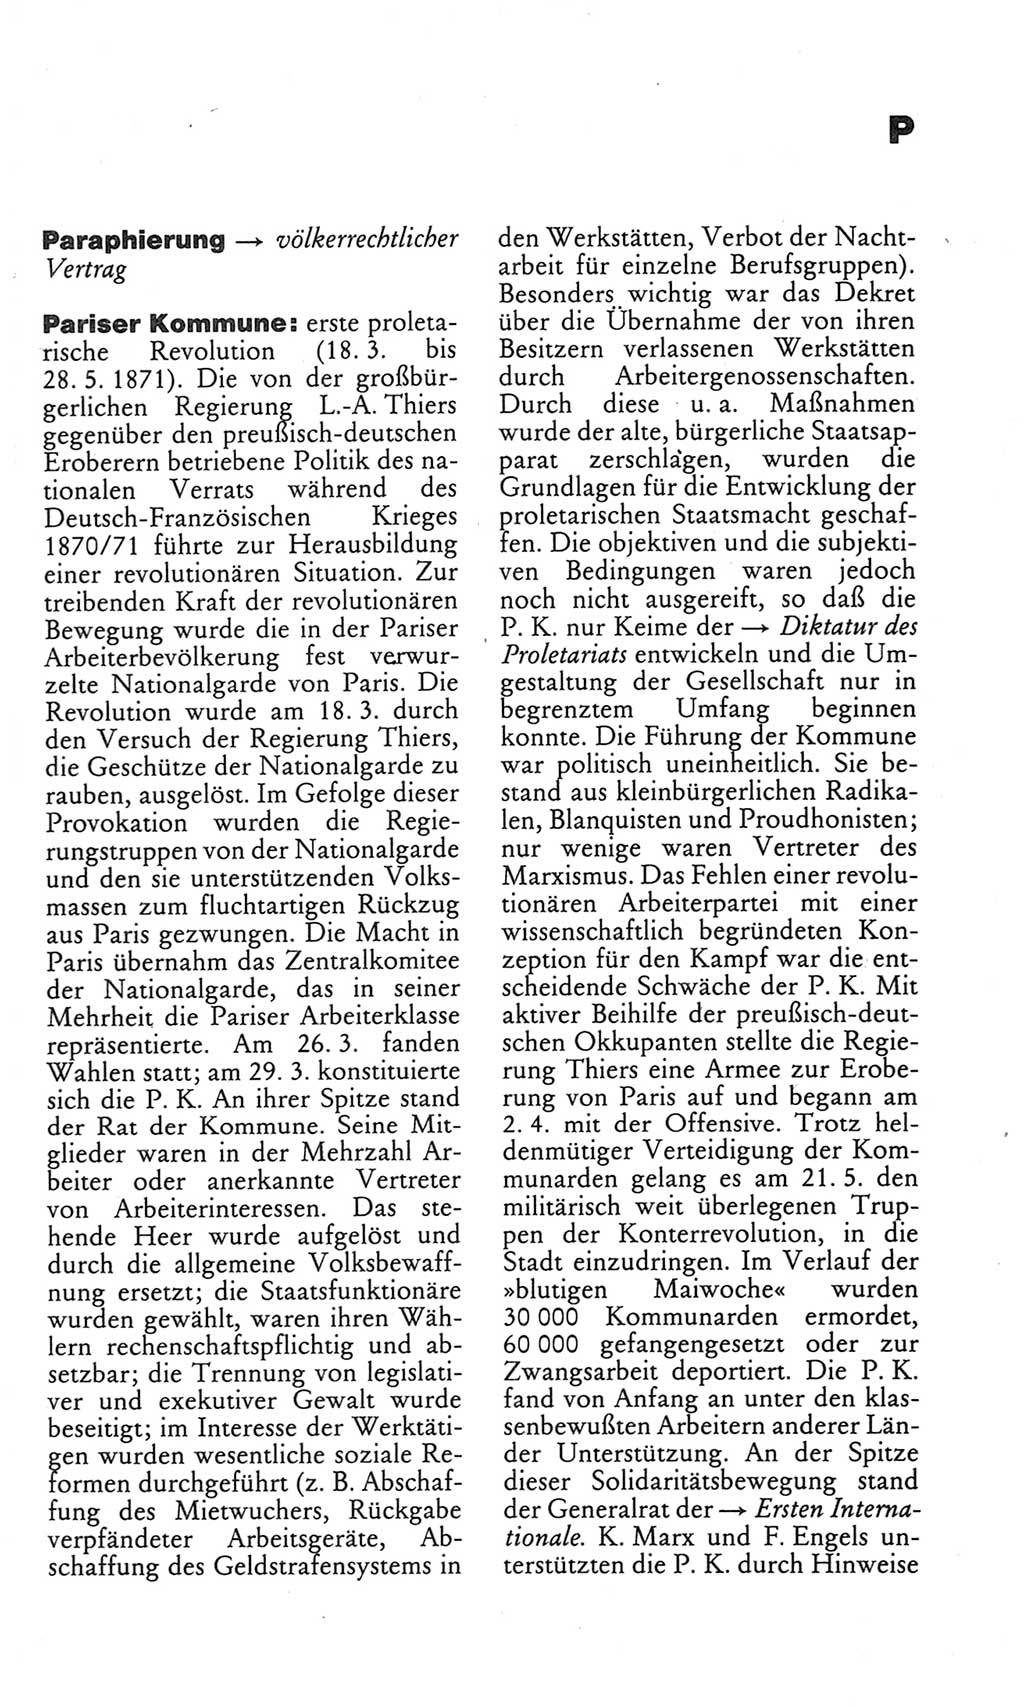 Kleines politisches Wörterbuch [Deutsche Demokratische Republik (DDR)] 1983, Seite 717 (Kl. pol. Wb. DDR 1983, S. 717)